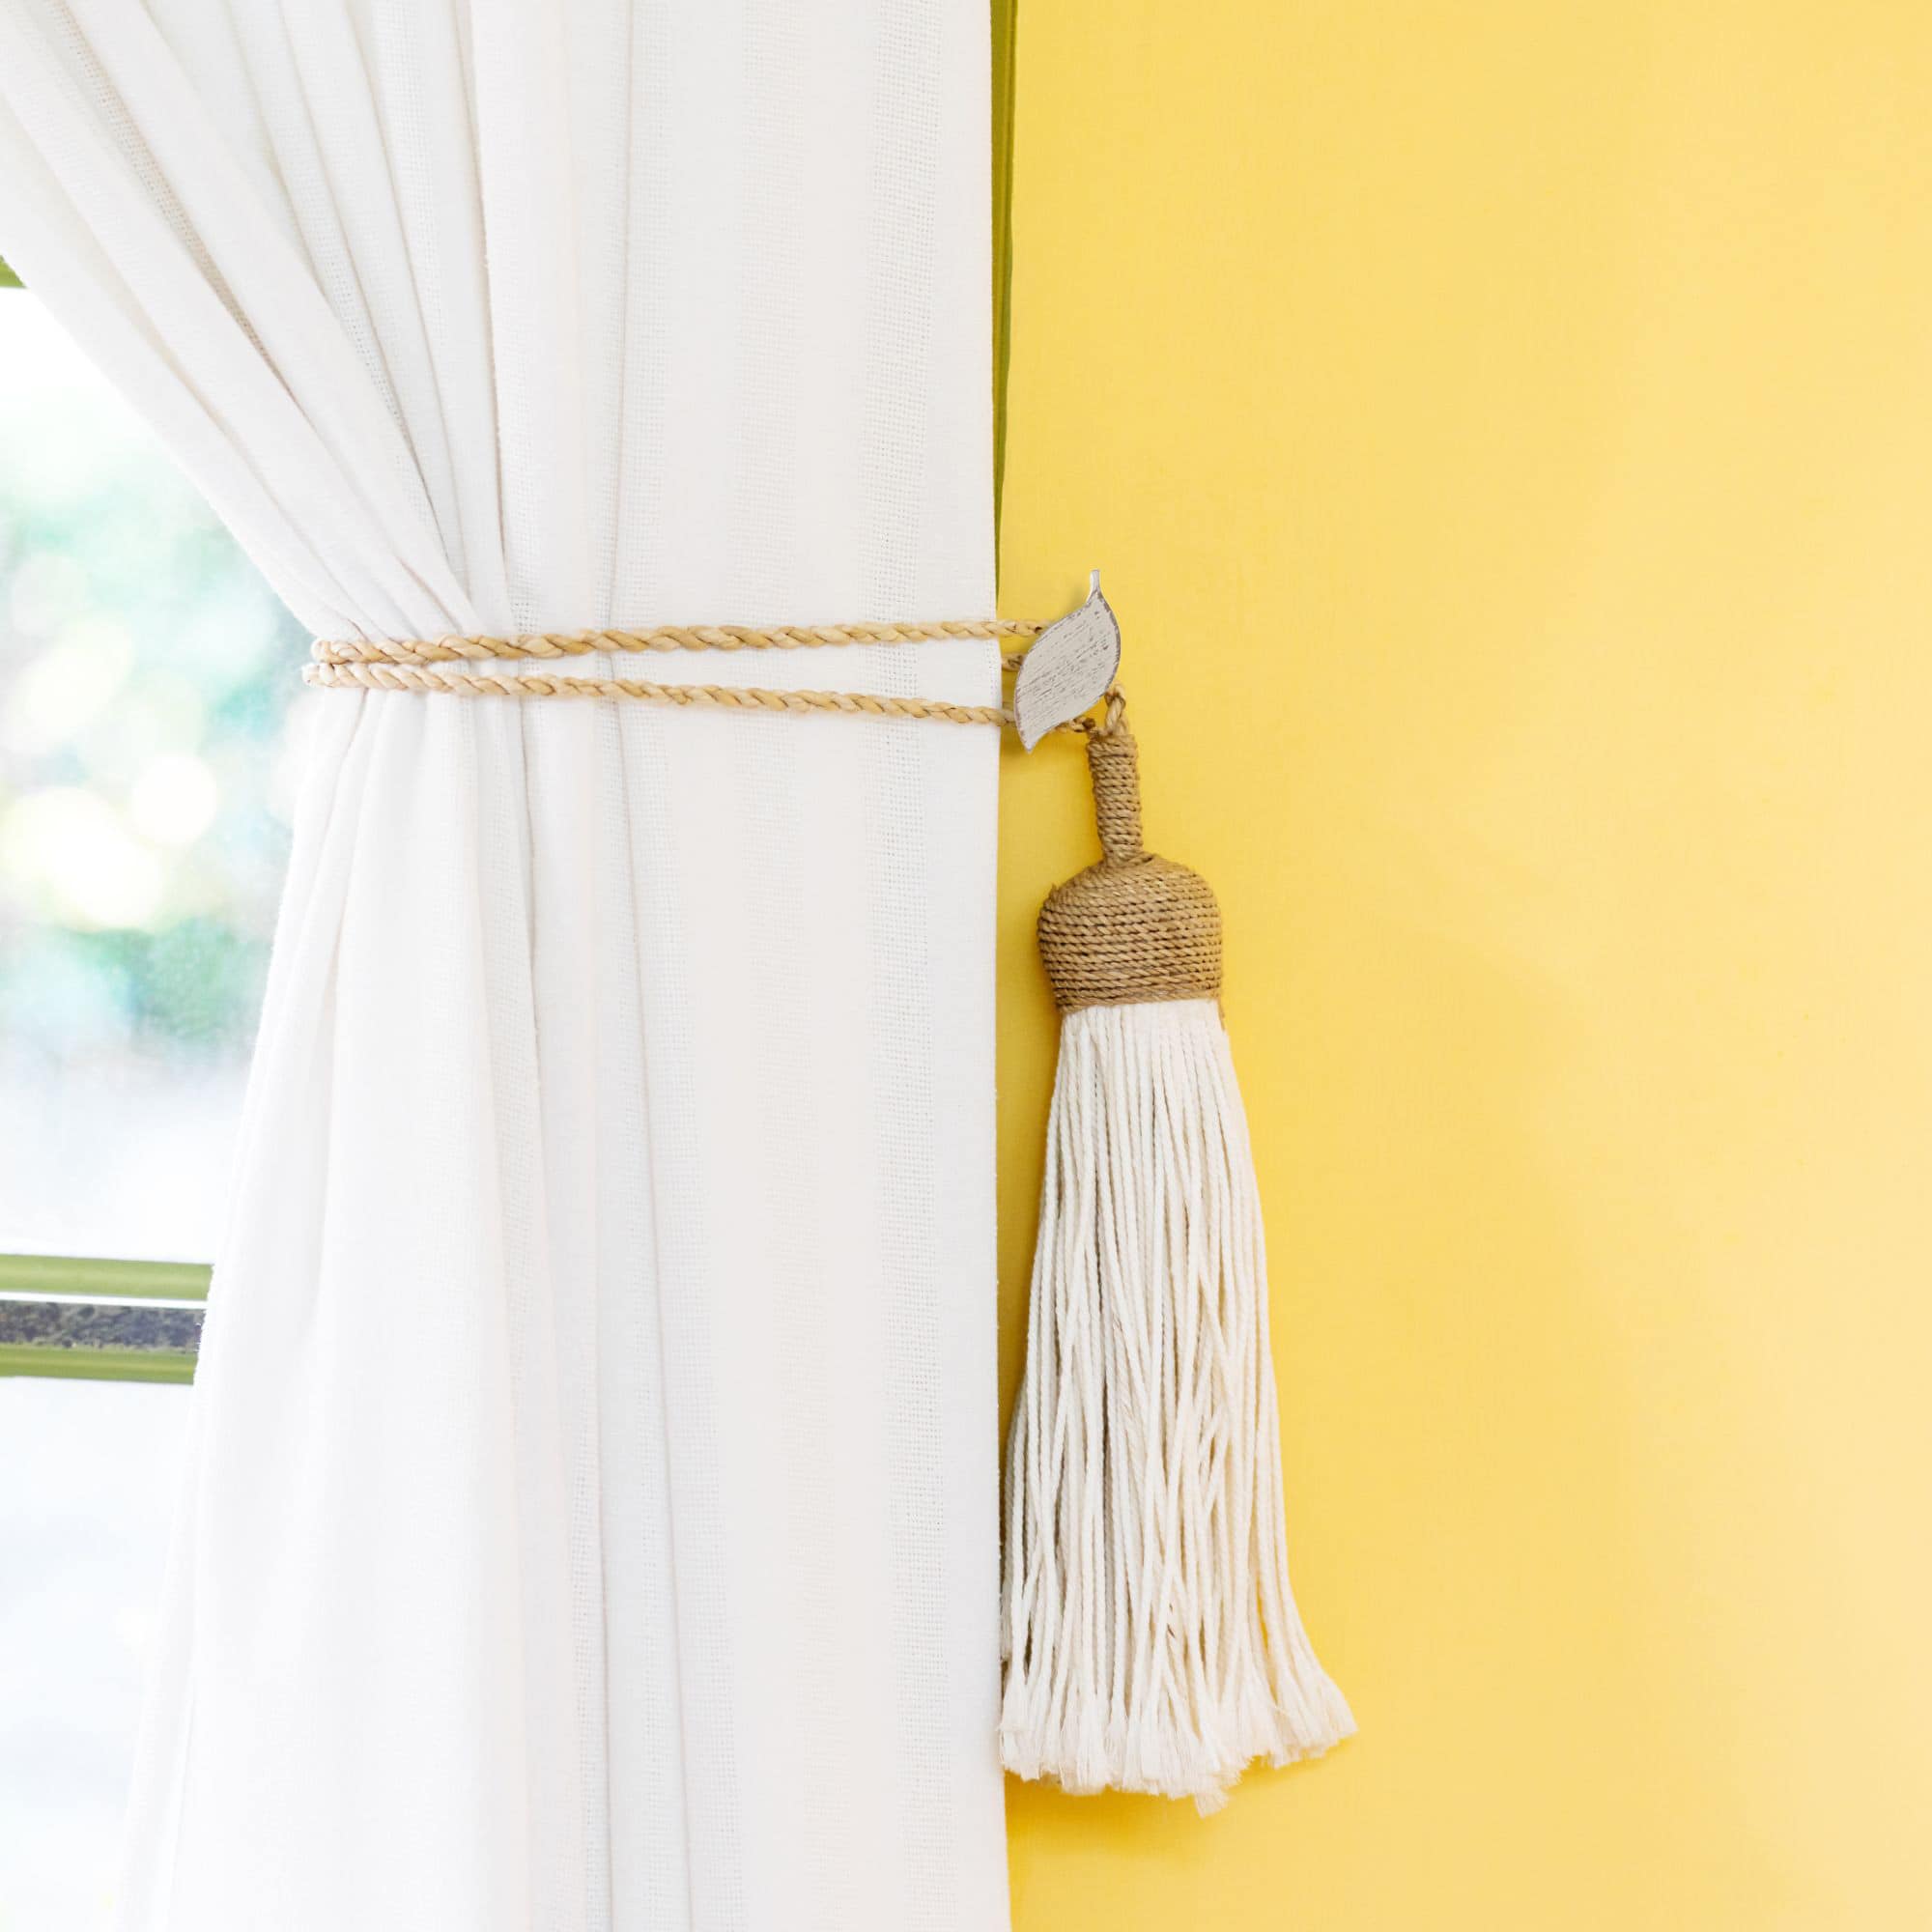 par de ganchos de metal para sujetar cortinas en color crudo y dorado con diseño natural